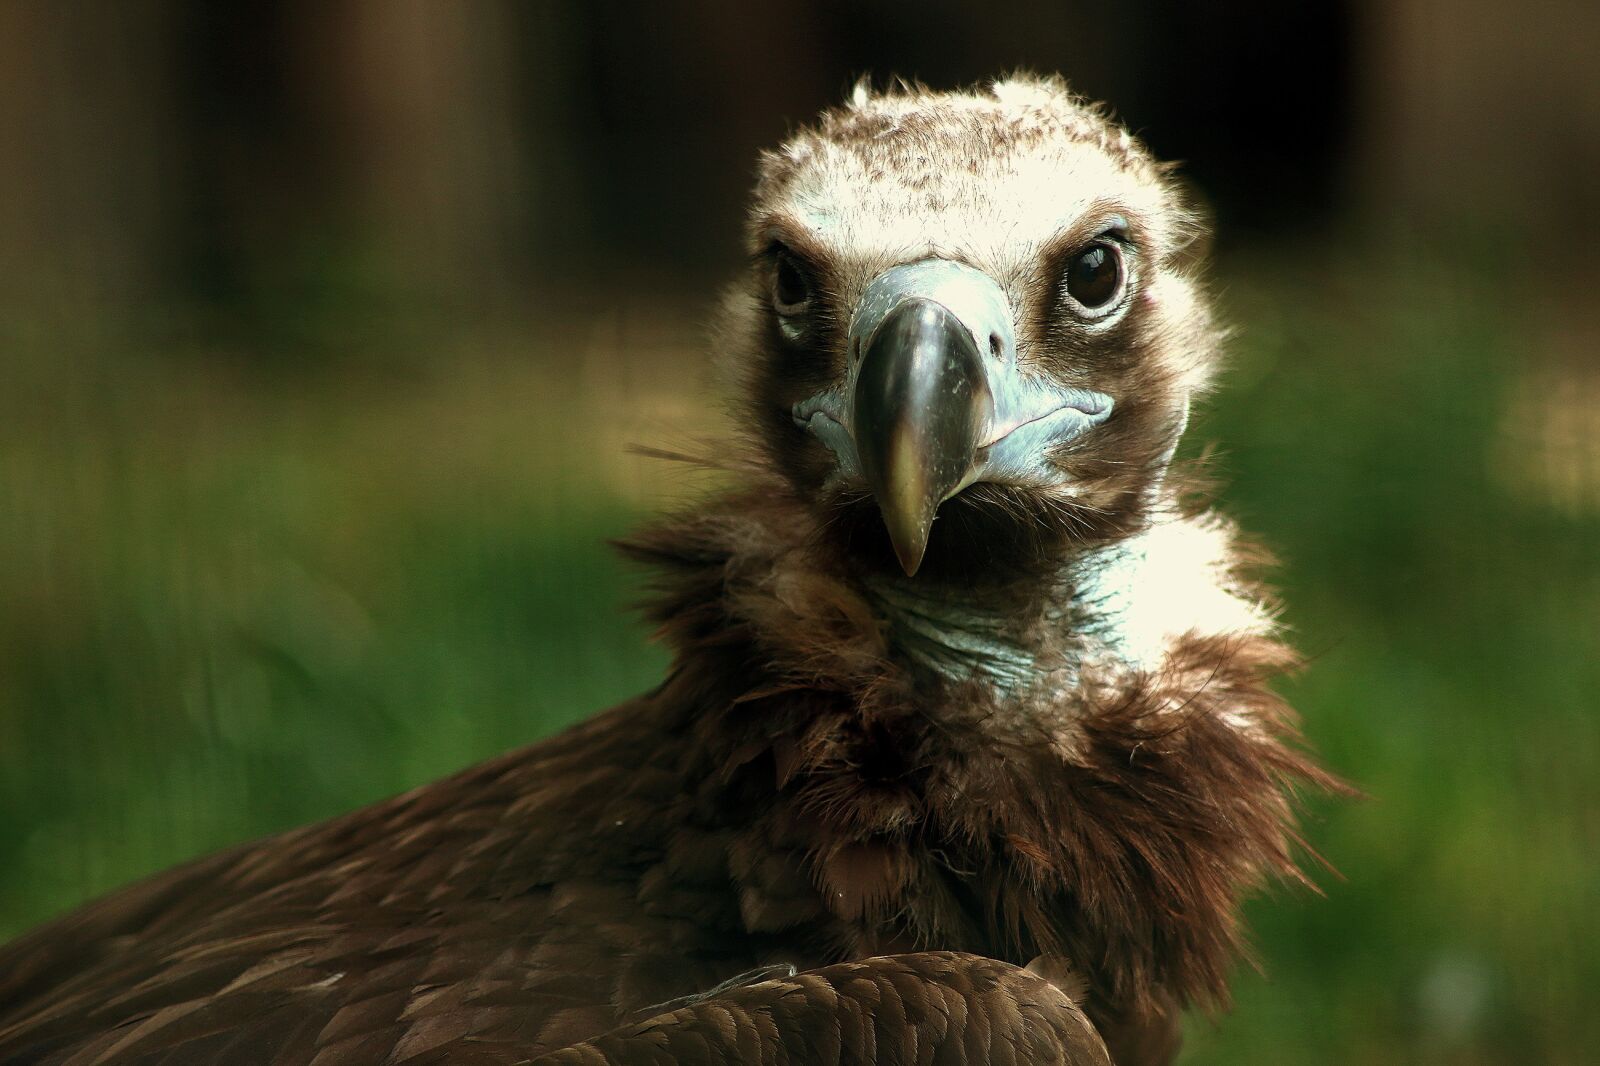 Canon EOS 70D sample photo. Animal, bird, close-up photography